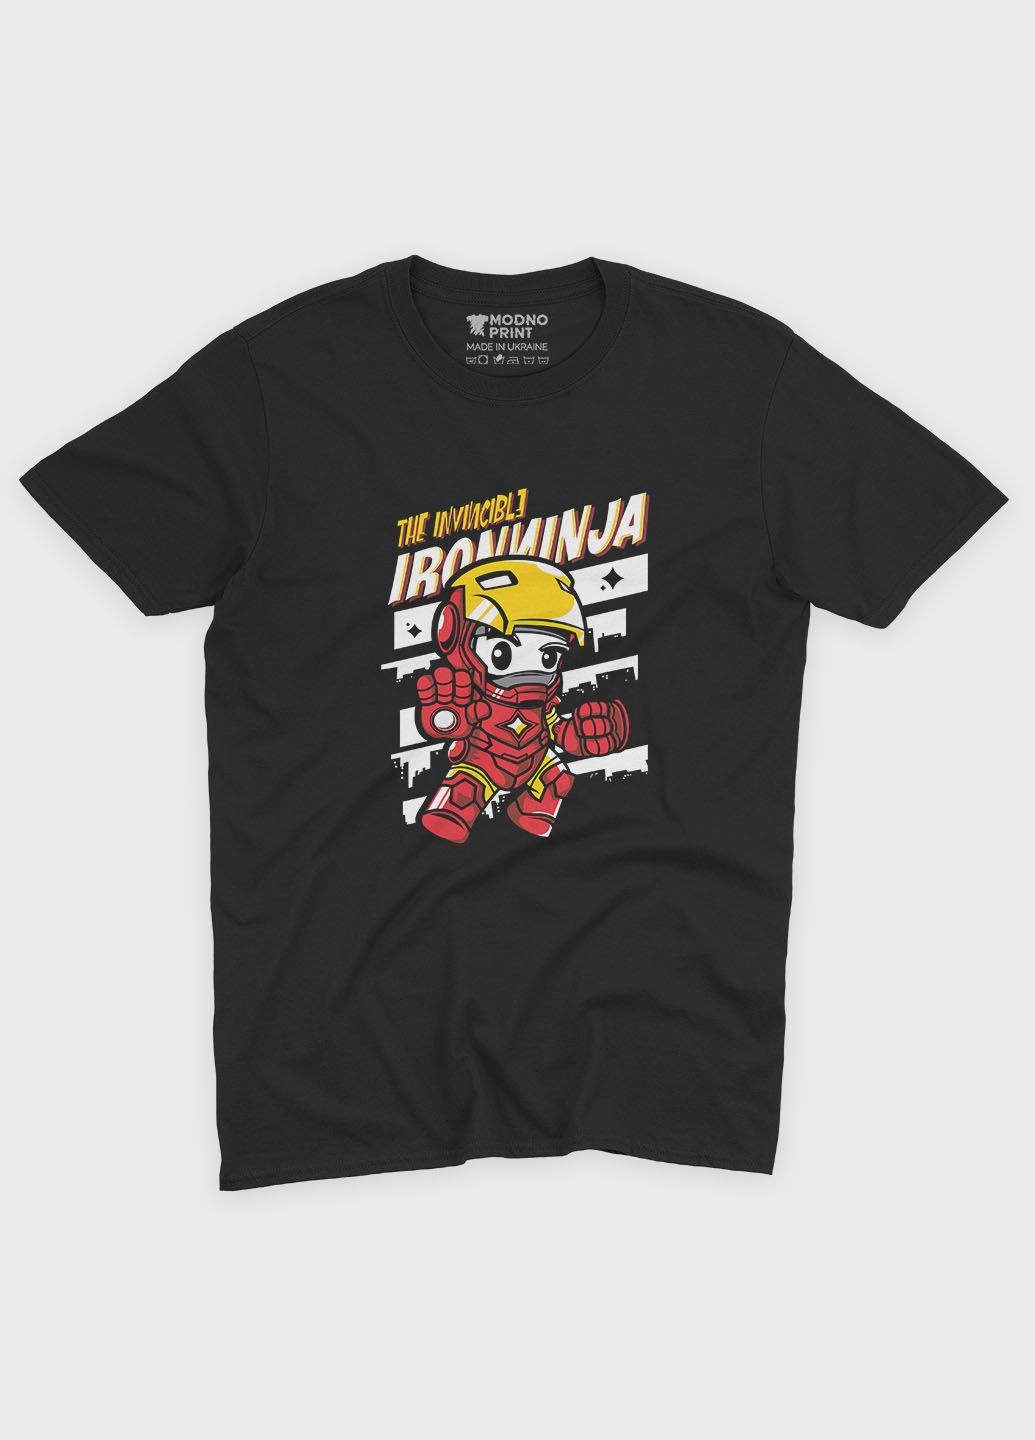 Черная демисезонная футболка для девочки с принтом супергероя - железный человек (ts001-1-gl-006-016-009-g) Modno